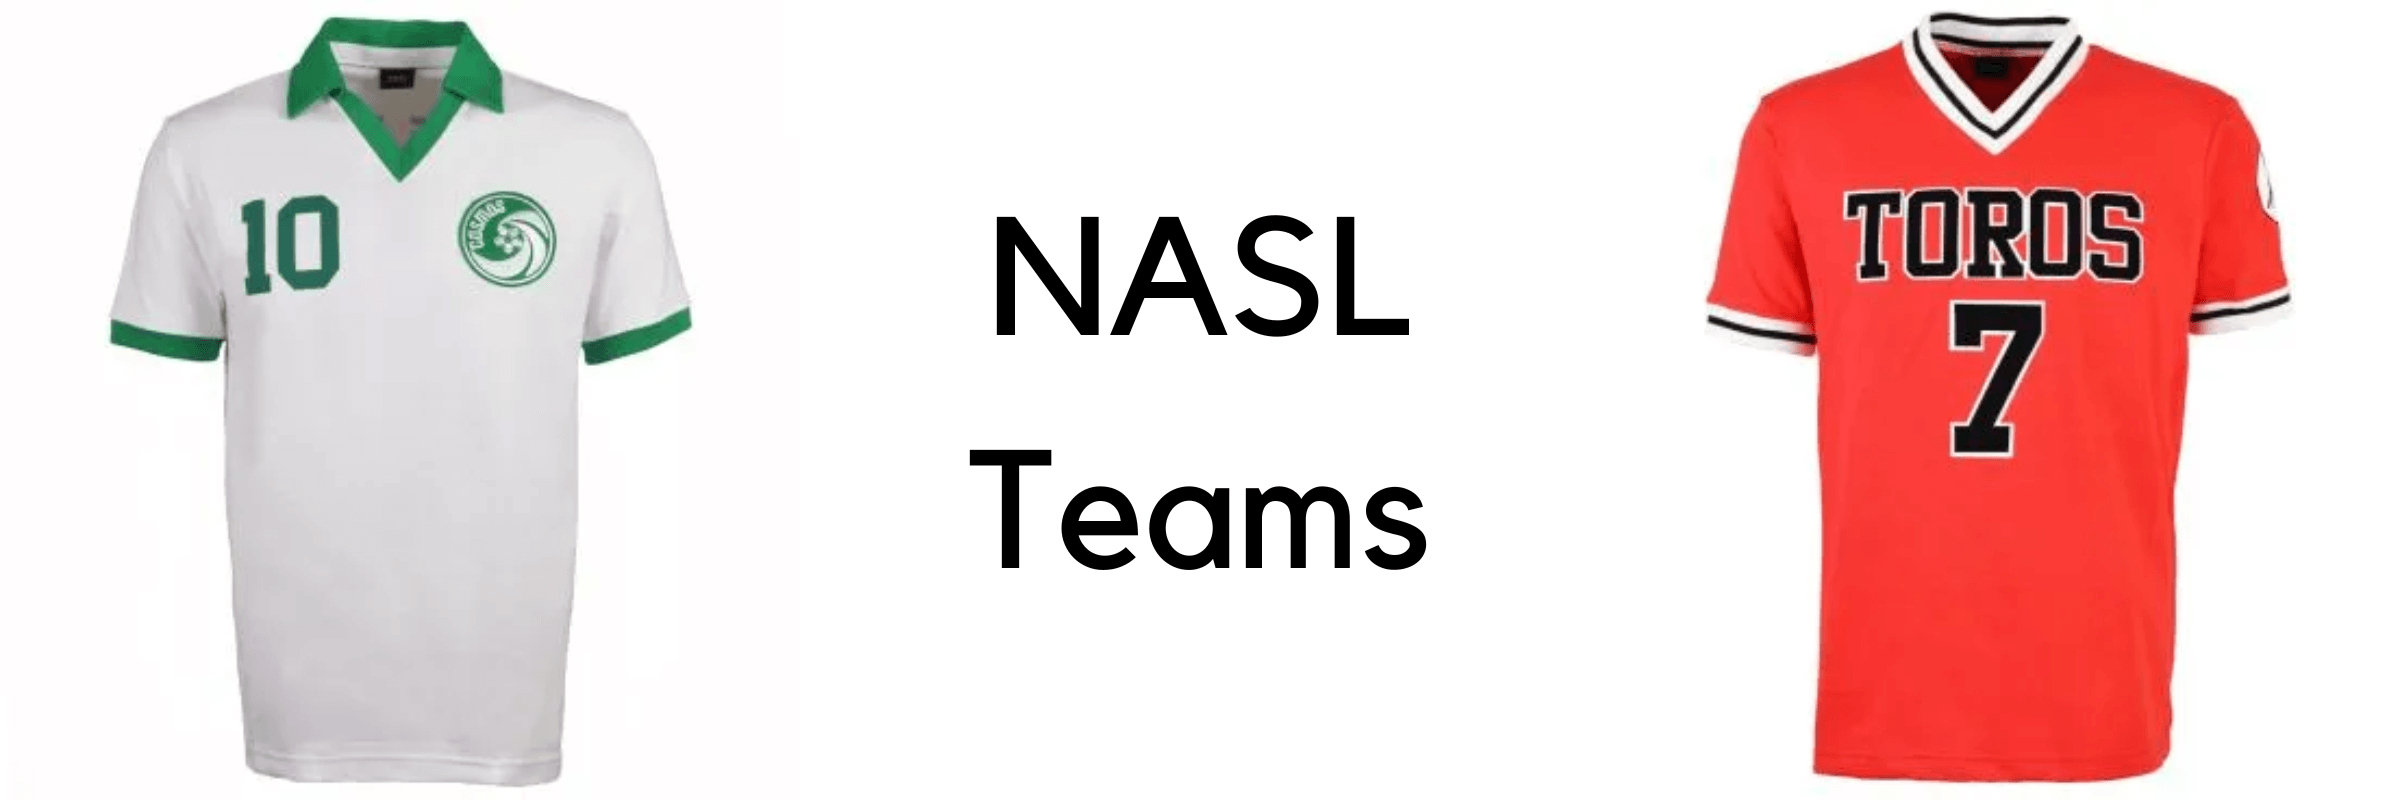 NASL, New York Cosmos, LA Toros